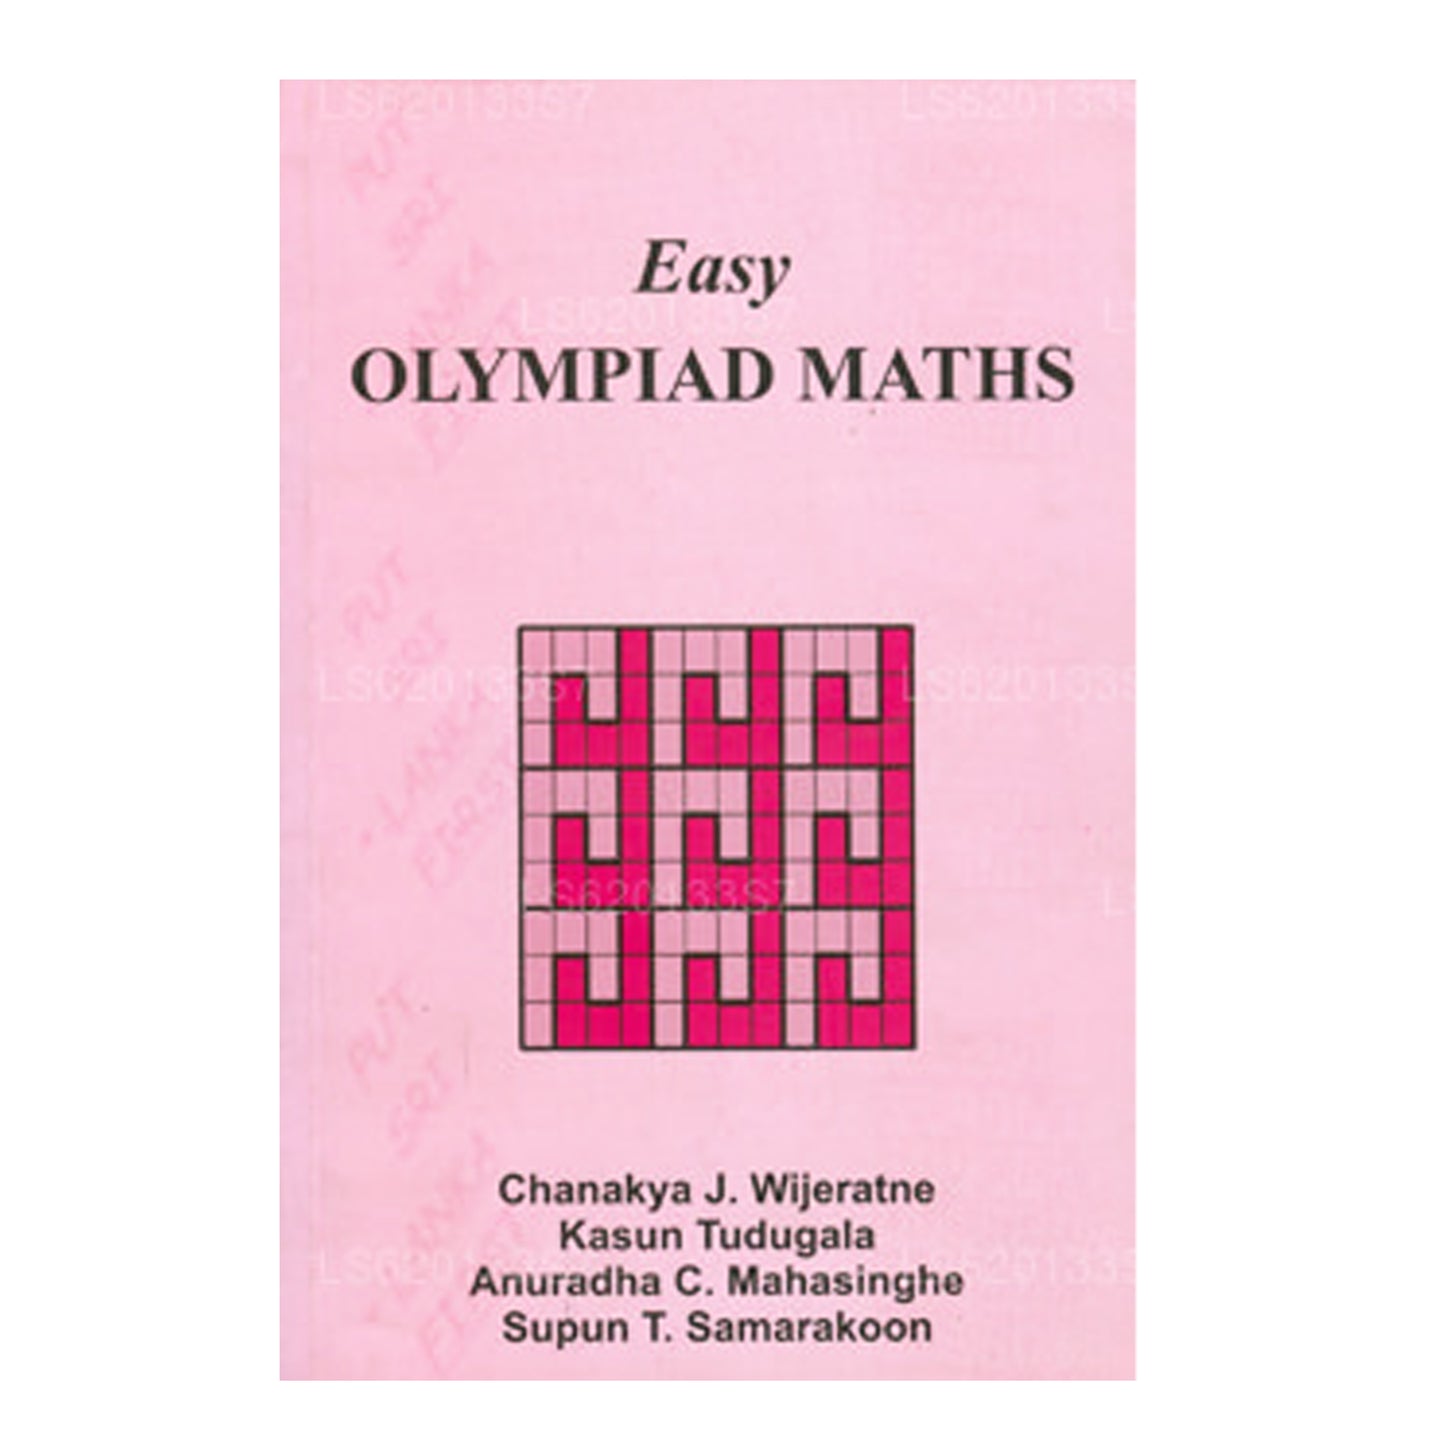 Easy Olympiad Maths